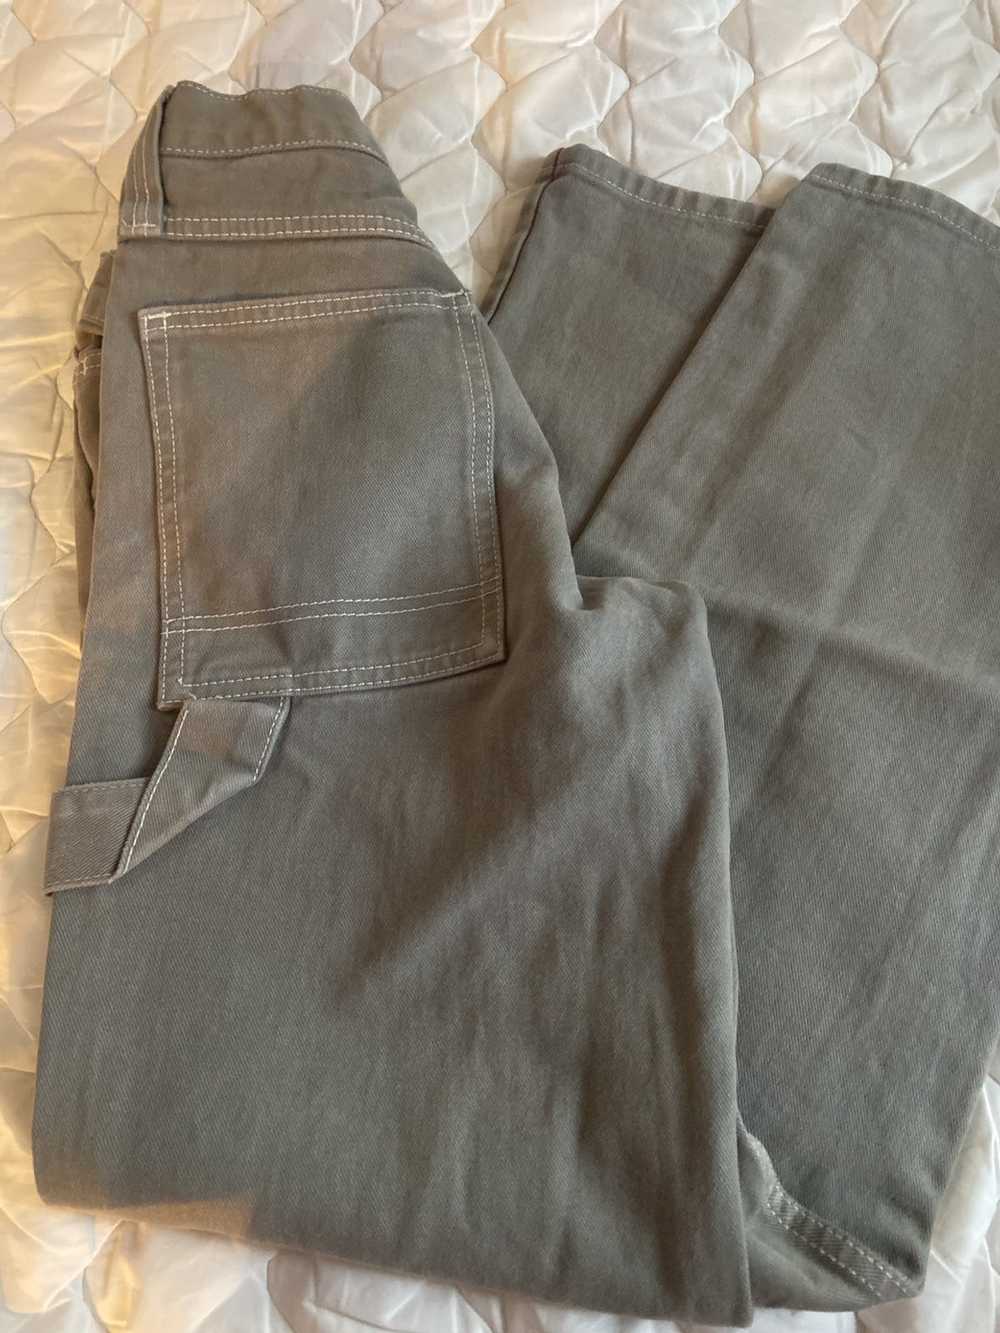 Brandy Melville John galt gray straight leg jeans - image 1